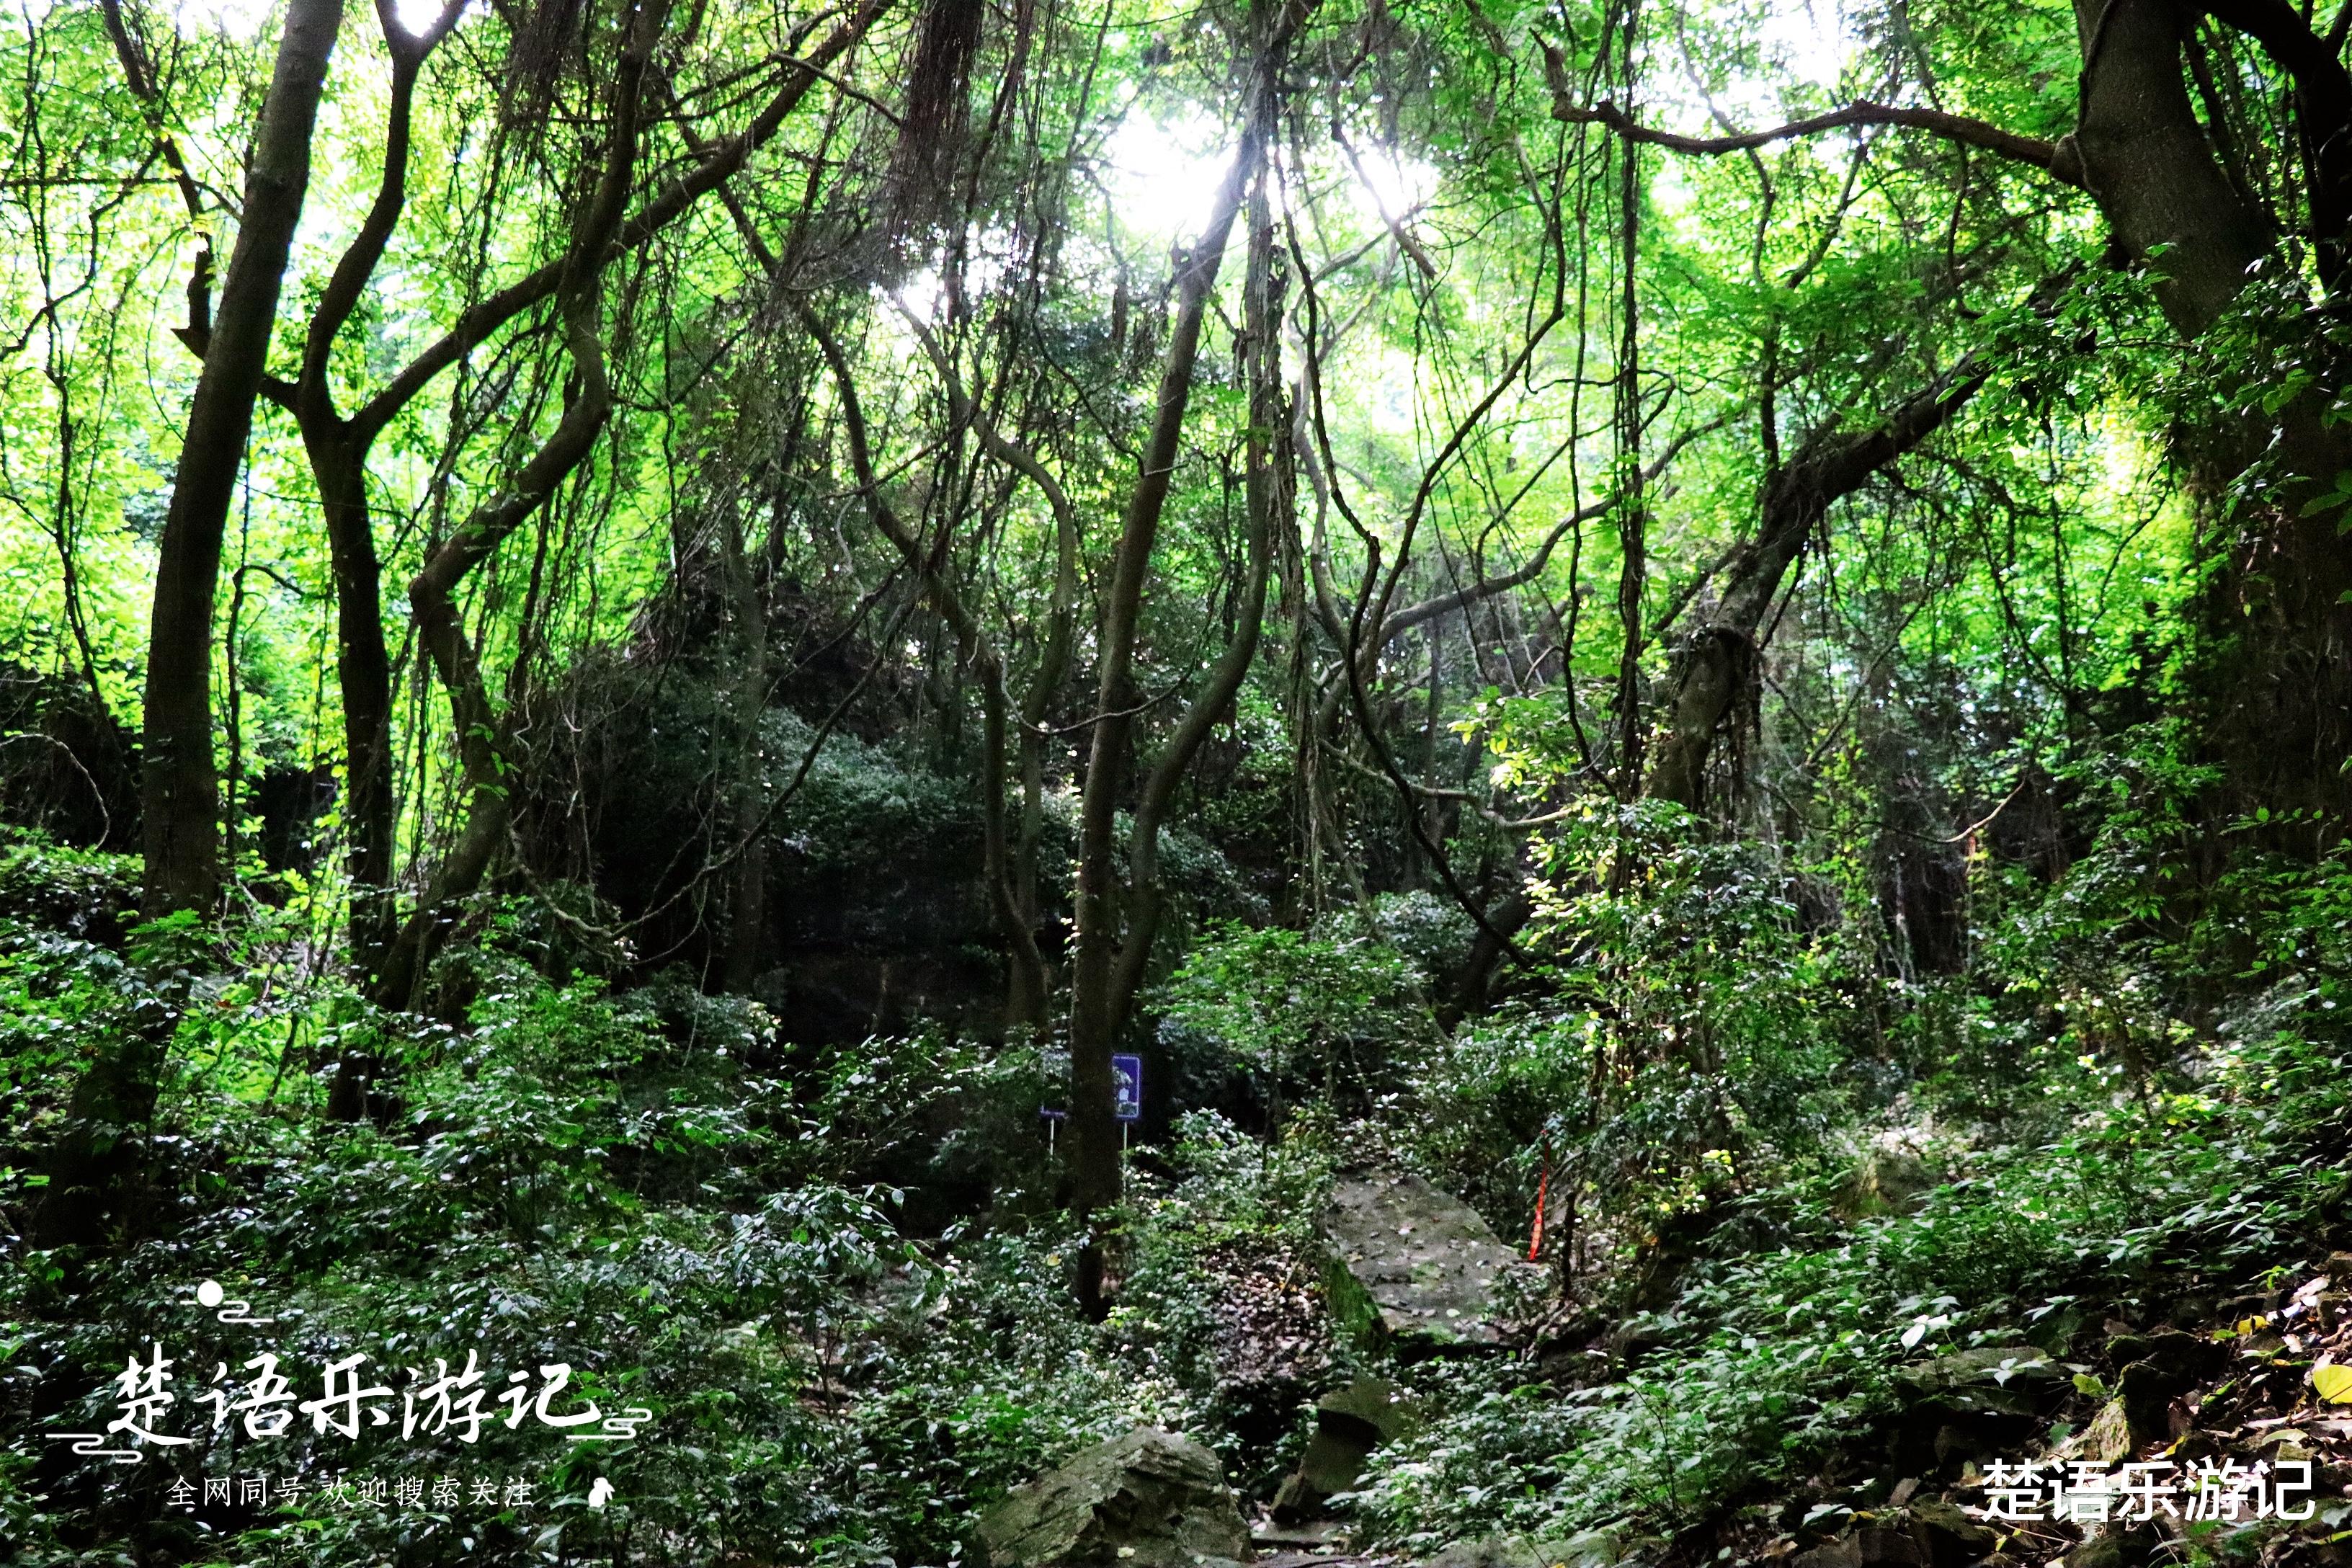 宁波|宁波有条峡谷风景奇绝，滴水如琴声般清越，远胜杭州灵隐一线天